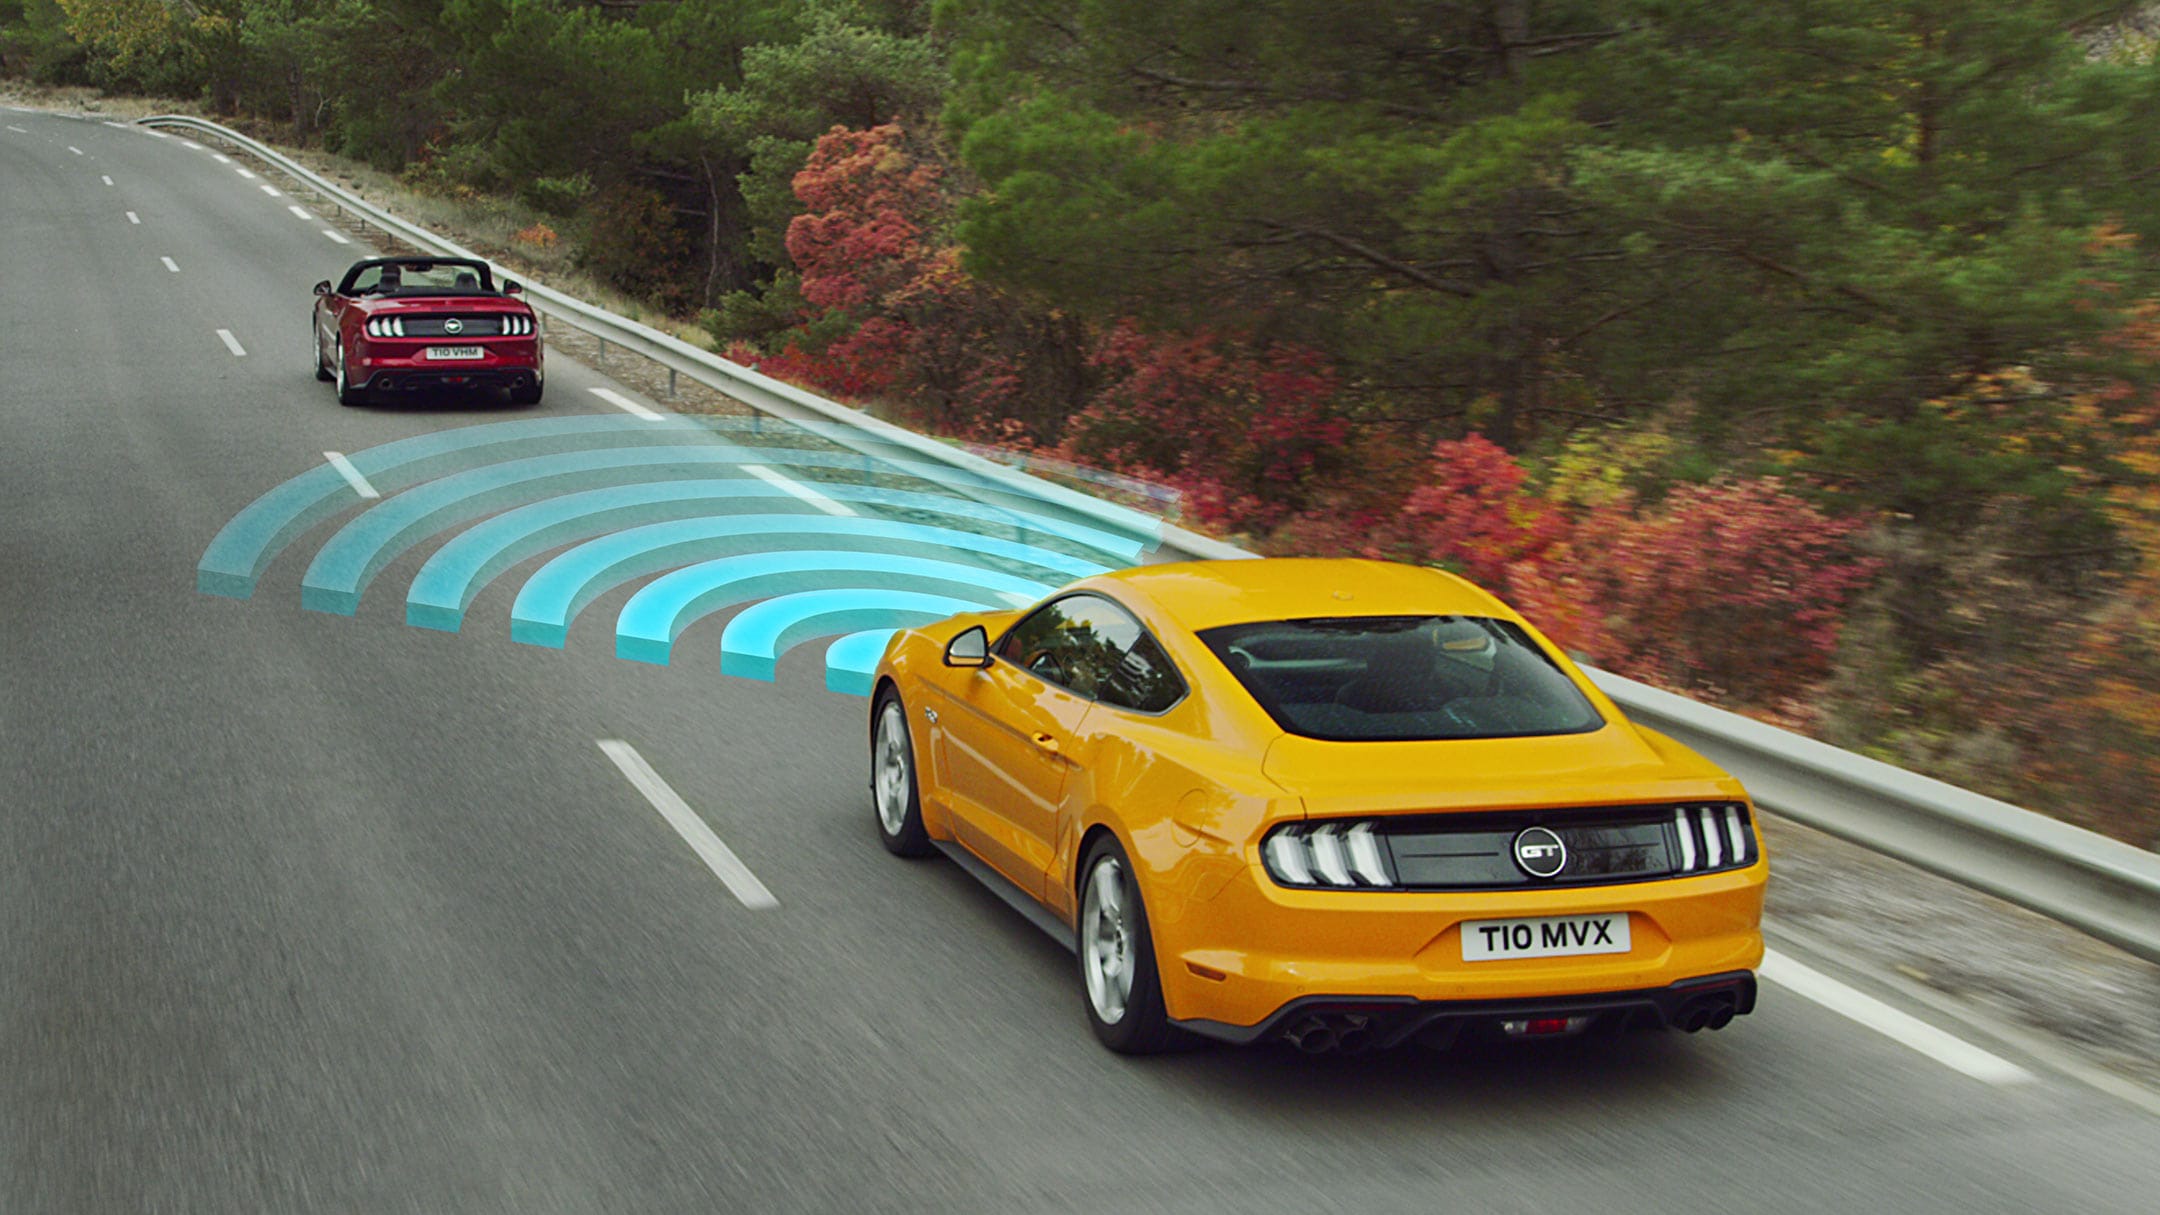 Ford Mustang in Orange. Heckansicht, fahrend über eine Landstraße hinter einem roten Auto mit visualisierter Geschwindigkeitsregelanlage